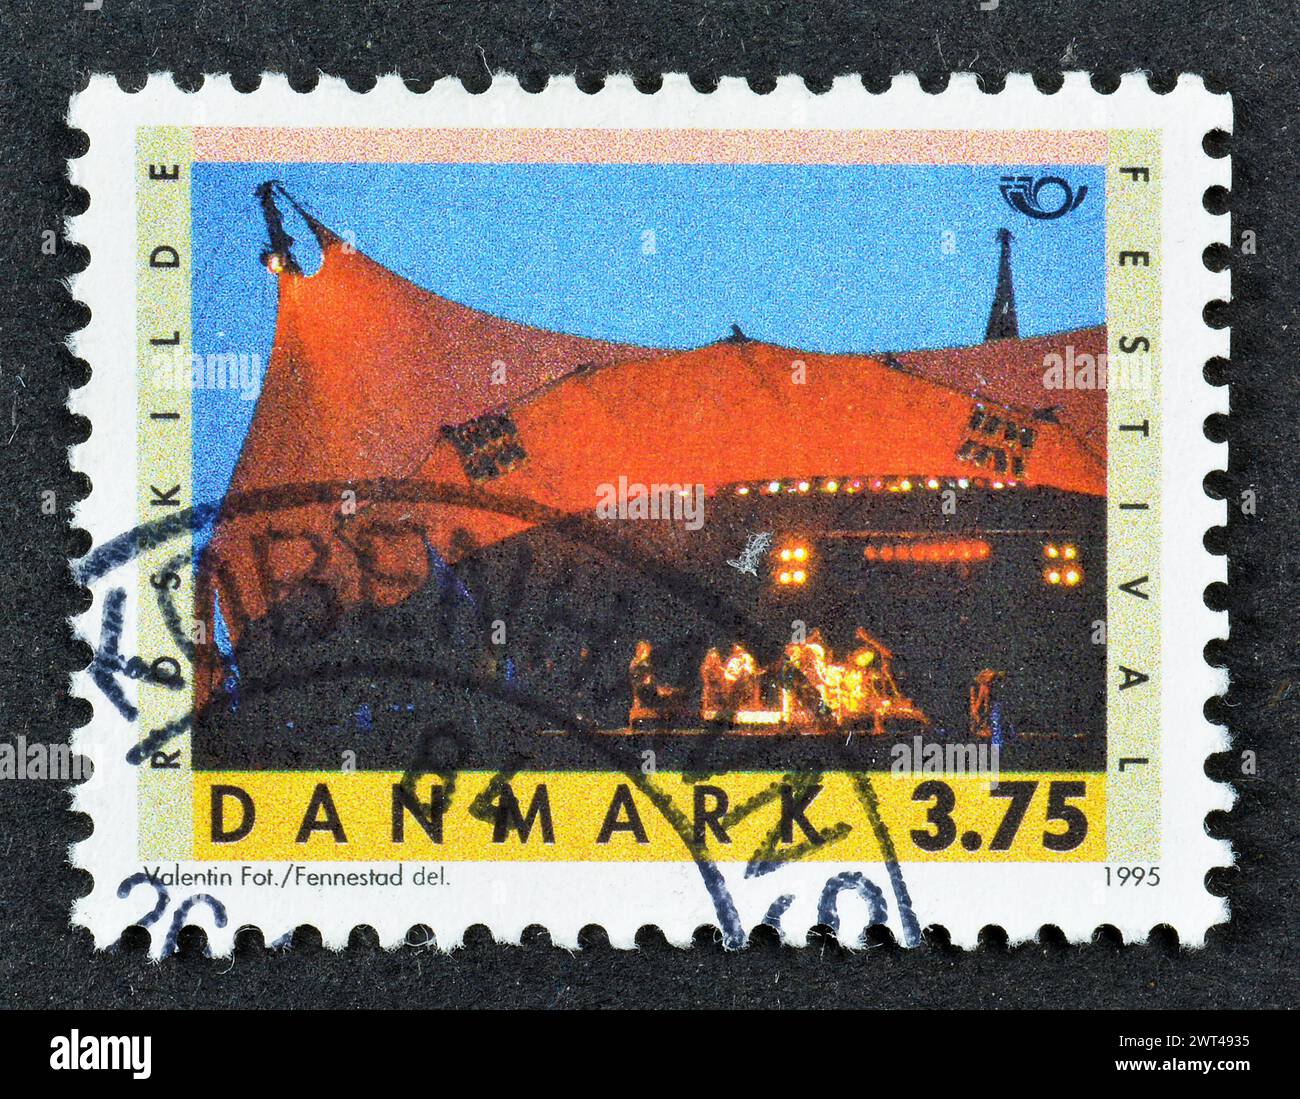 Timbre-poste oblitéré imprimé par le Danemark, qui montre scène (25e anniversaire du festival de Roskilde), vers 1995. Banque D'Images